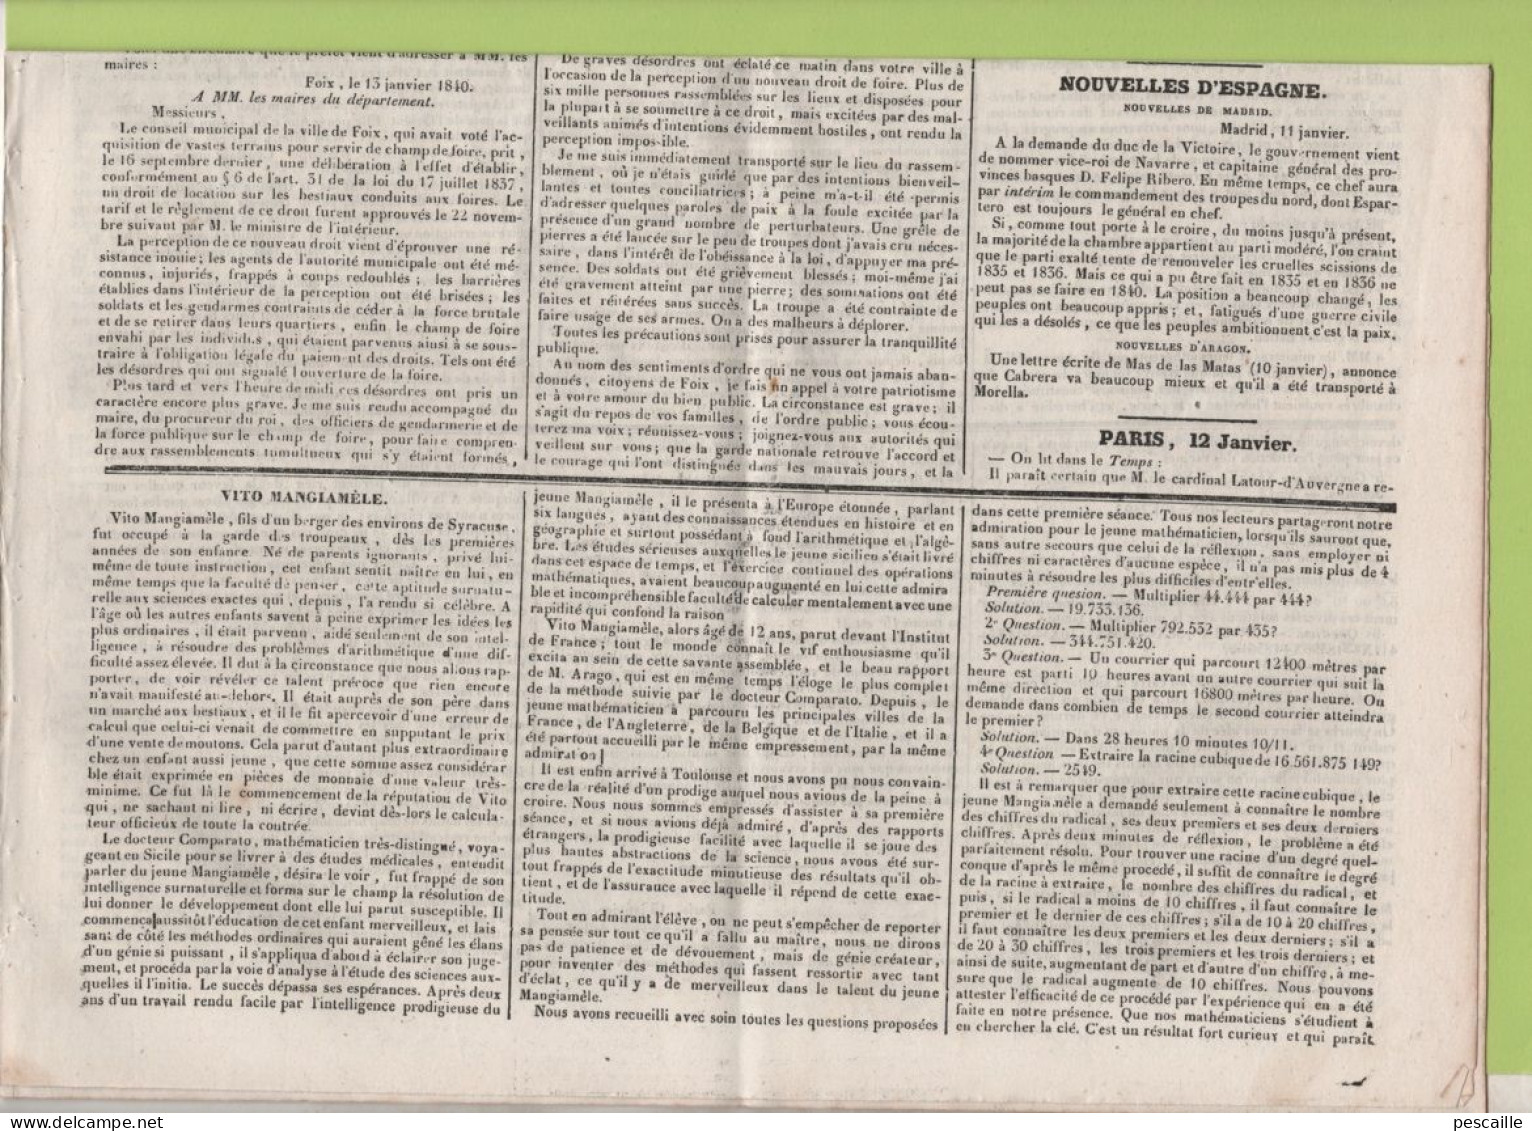 JOURNAL POLITIQUE TOULOUSE 17 01 1840 - FOIX - VITO MANGIAMELE MATHEMATICIEN - SUISSE - MADRID - LAFFITTE / ARAGO - - 1800 - 1849